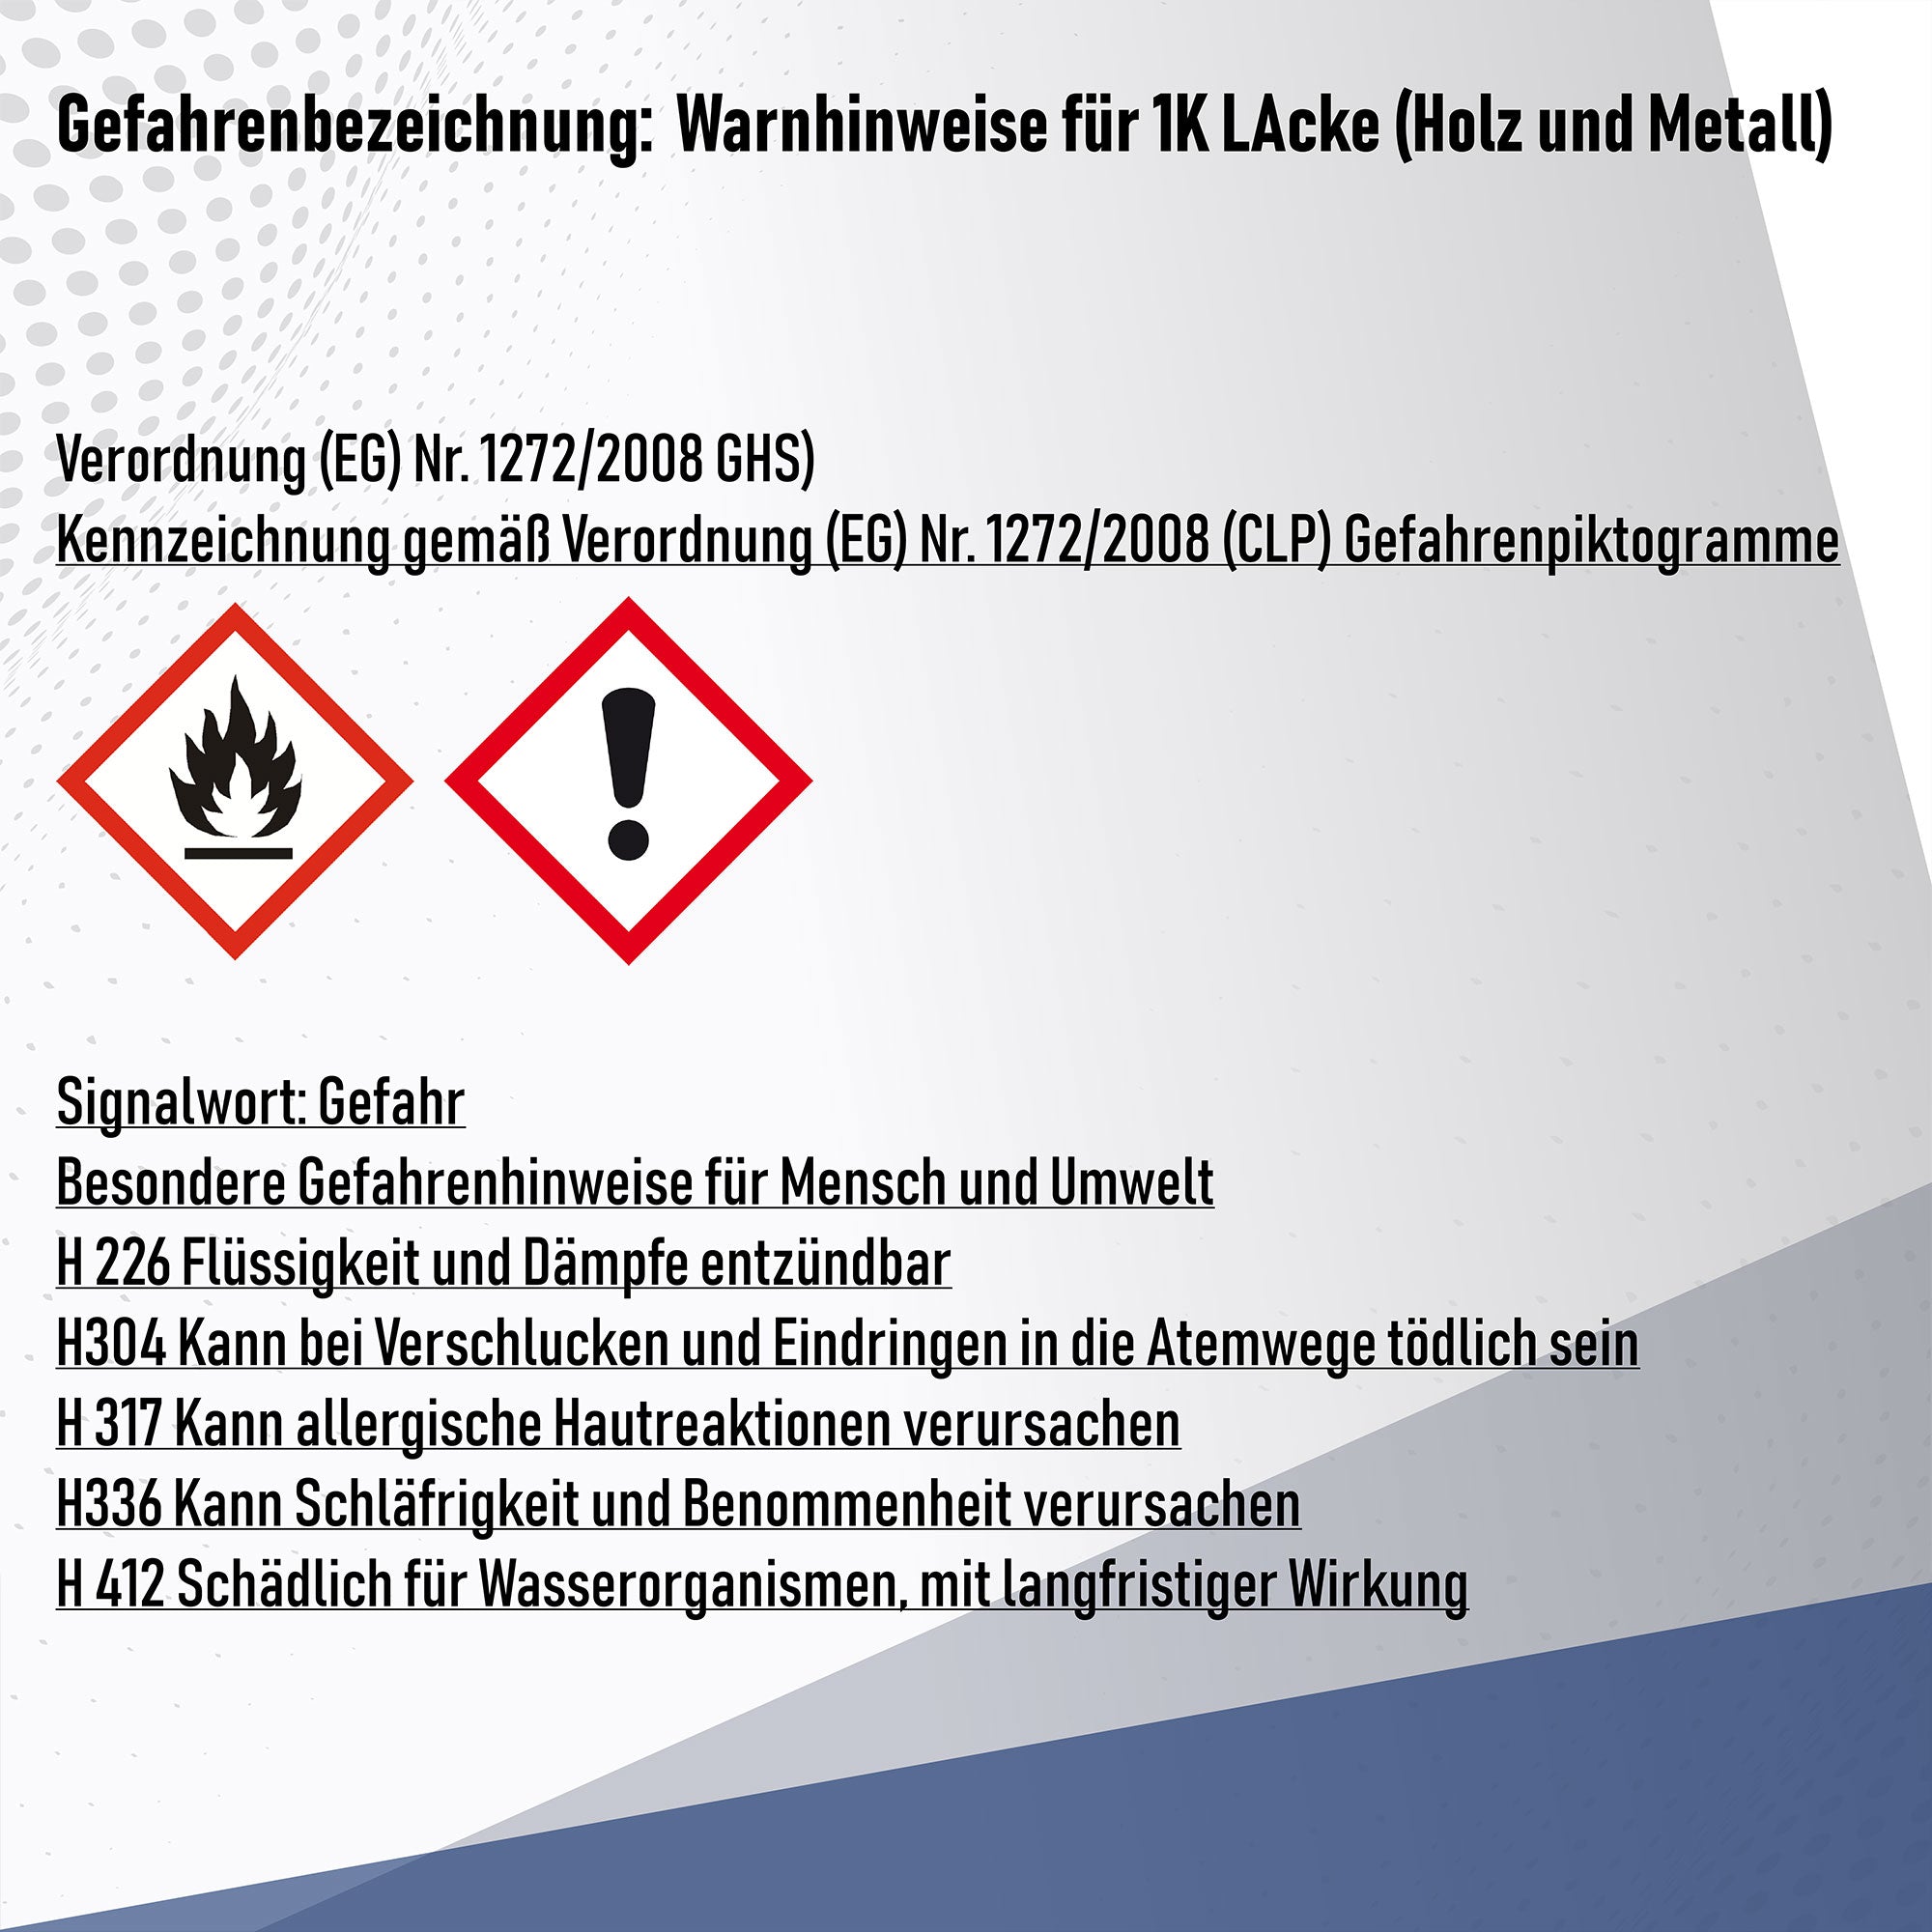 Hamburger Lack-Profi Buntlack in Flaschengrün RAL 6007 mit Lackierset (X300) & Verdünnung (1 L) - 30% Sparangebot